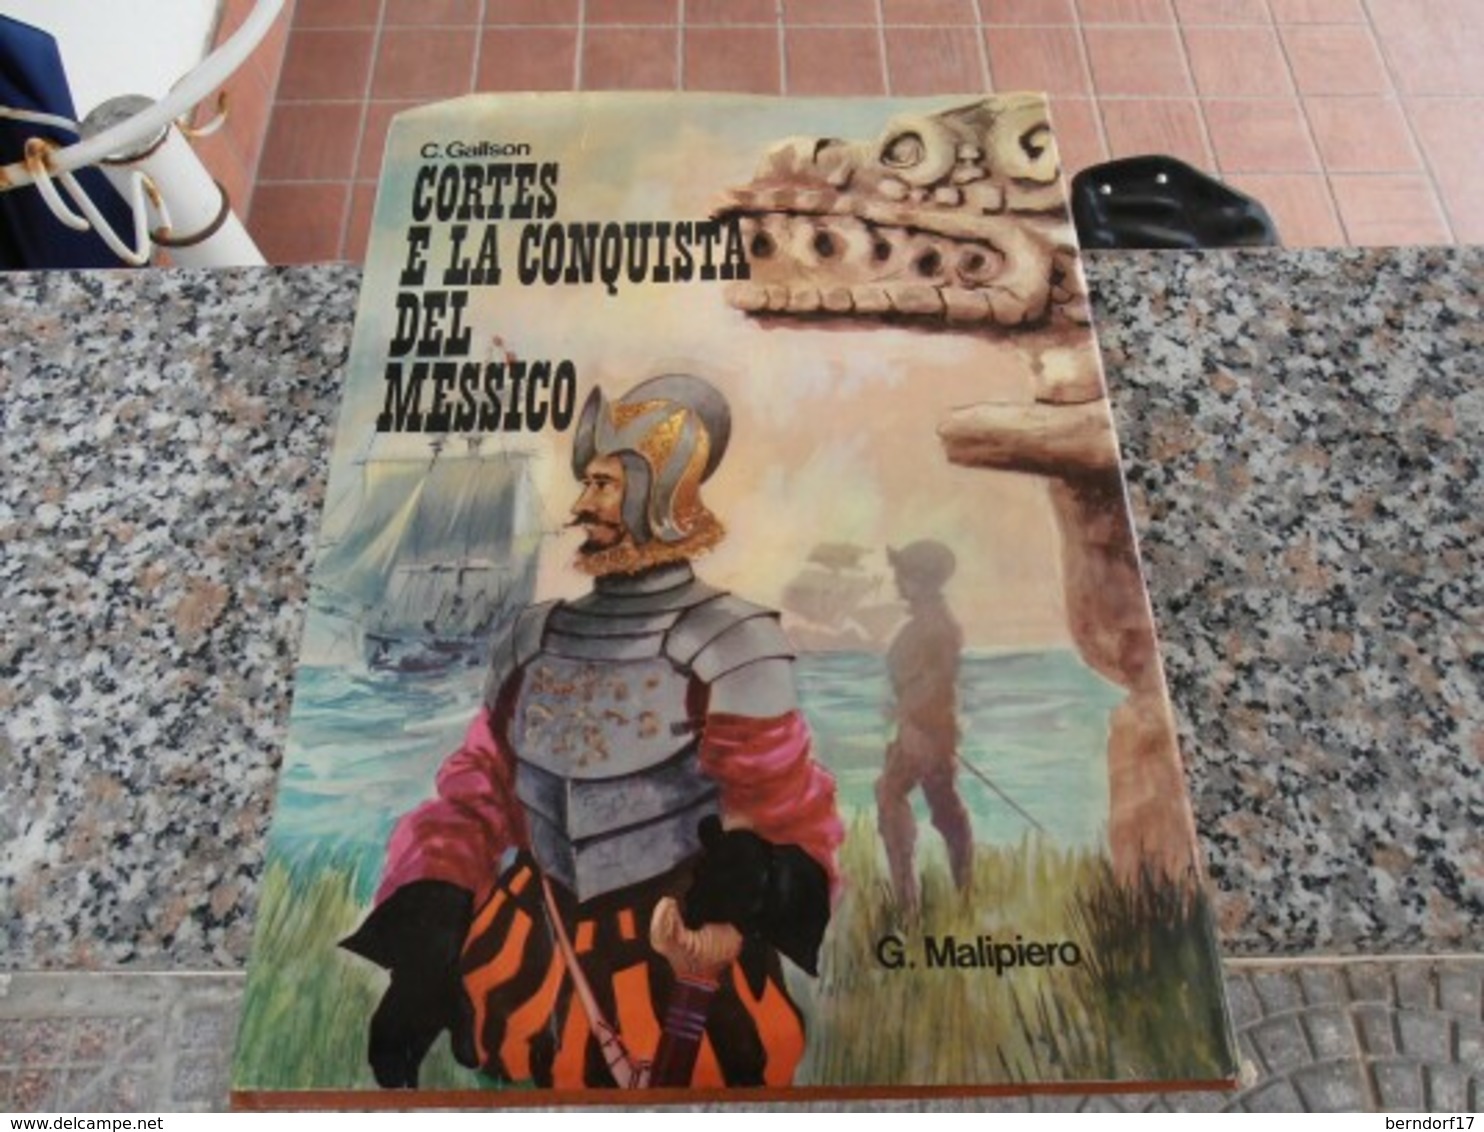 Cortes E La Conquista Del Messico - C. Gallson - Teenagers